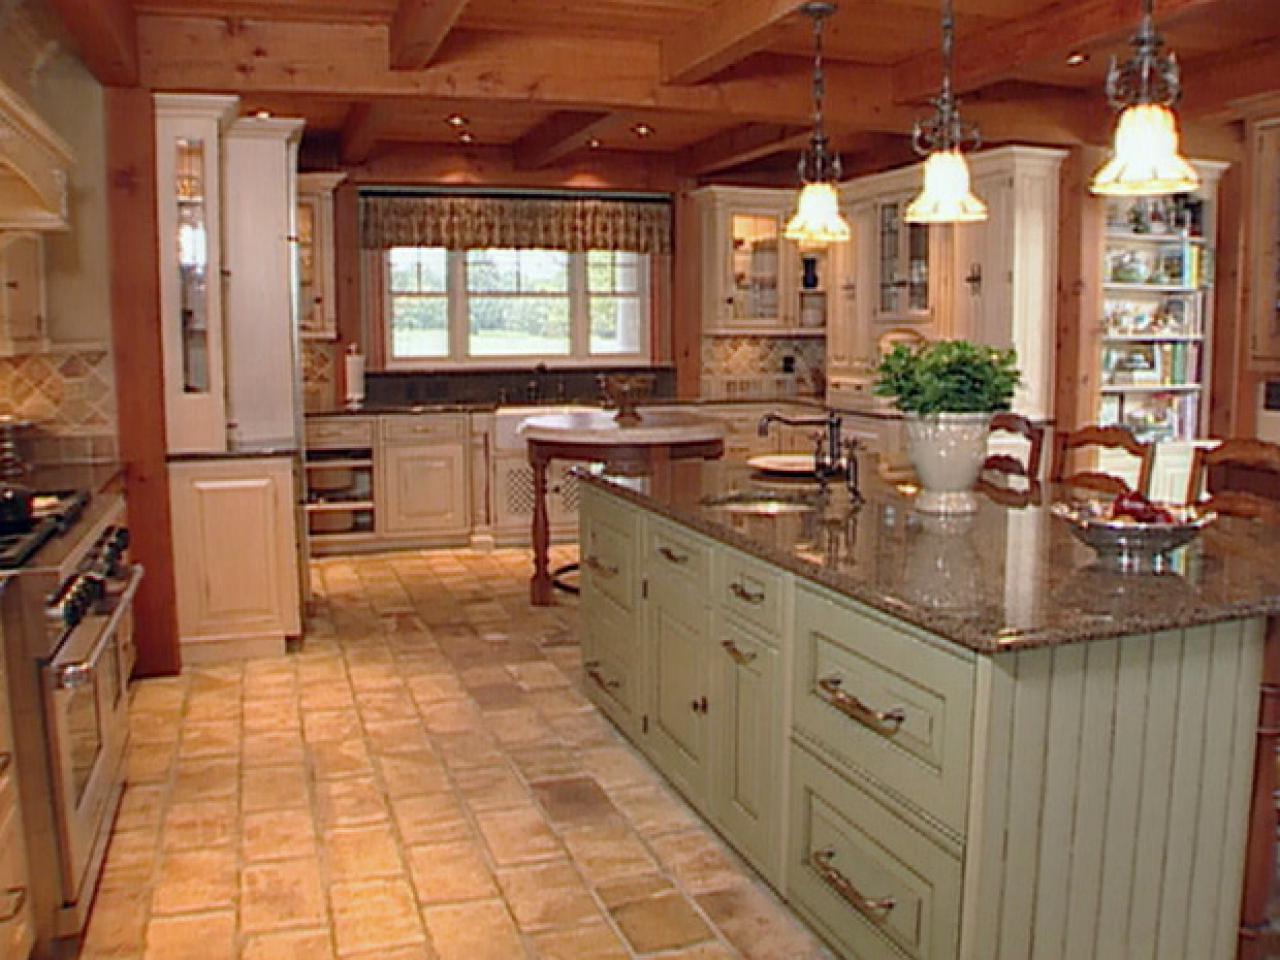 Older Home Kitchen Remodeling Ideas | Roy Home Design